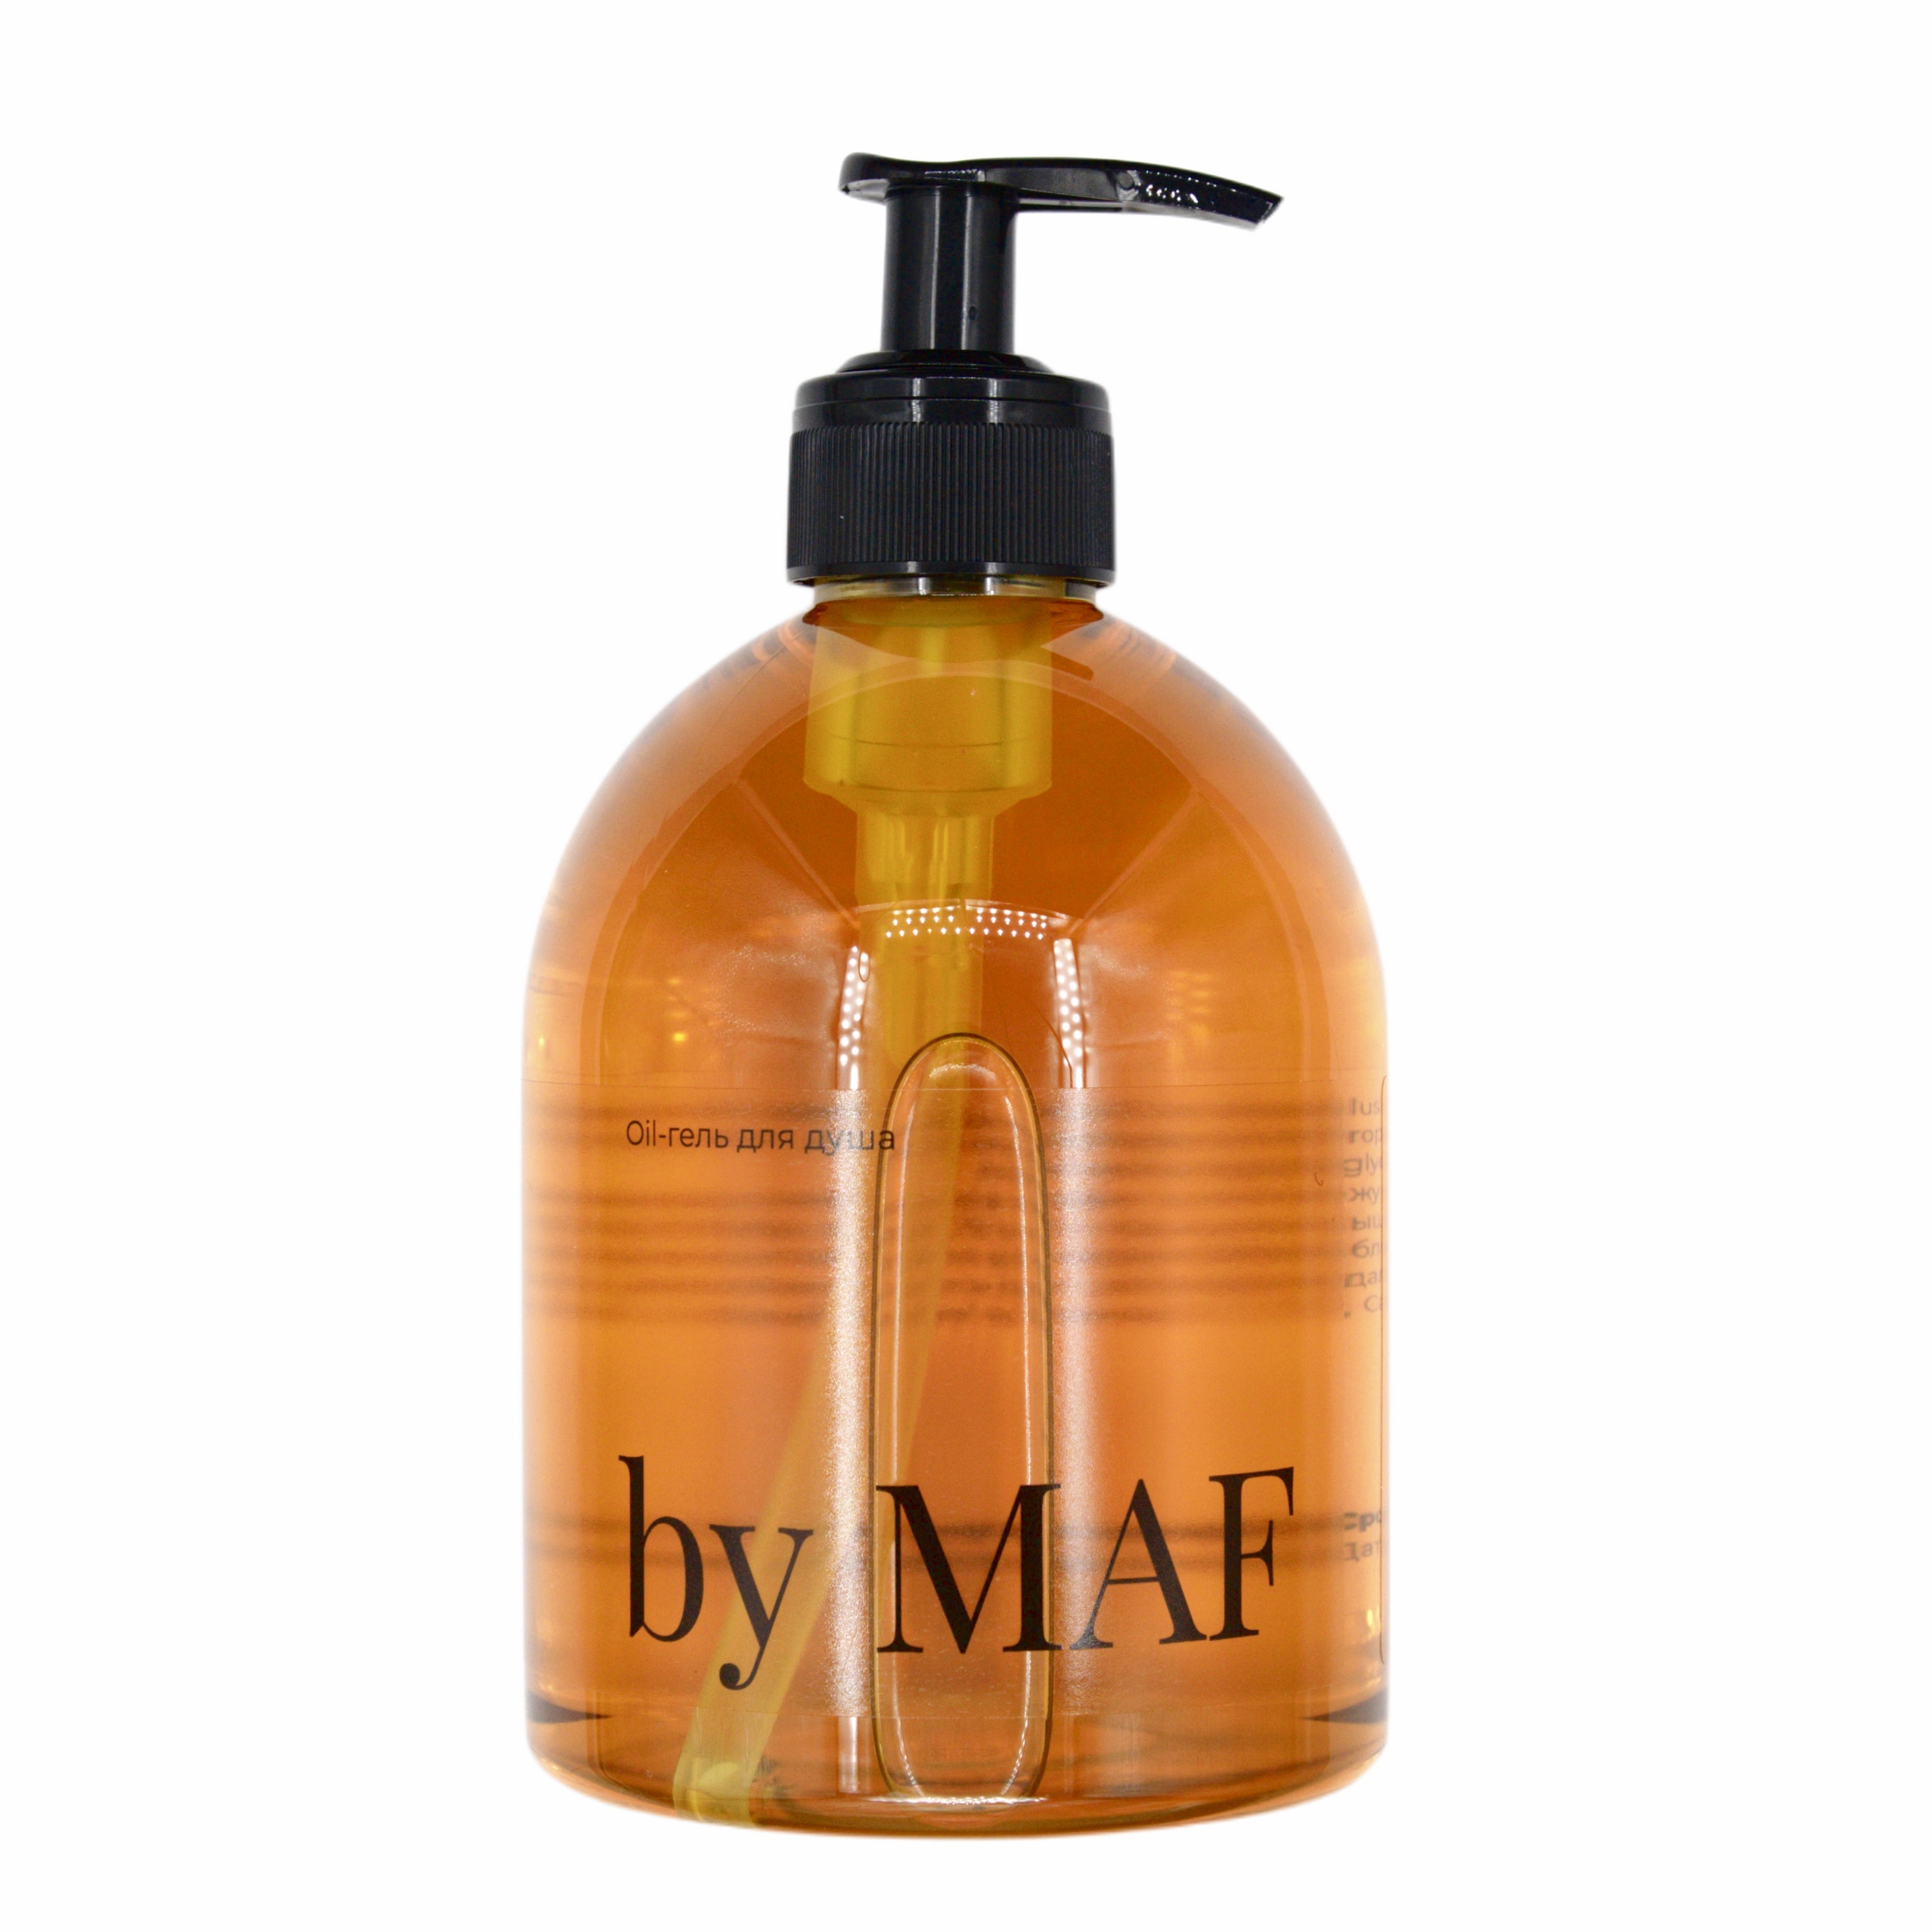 By maf. By MAF Shower Oil 500 мл. By MAF гель для душа. By MAF мыло. By MAF smells like French Cosmetics купить.